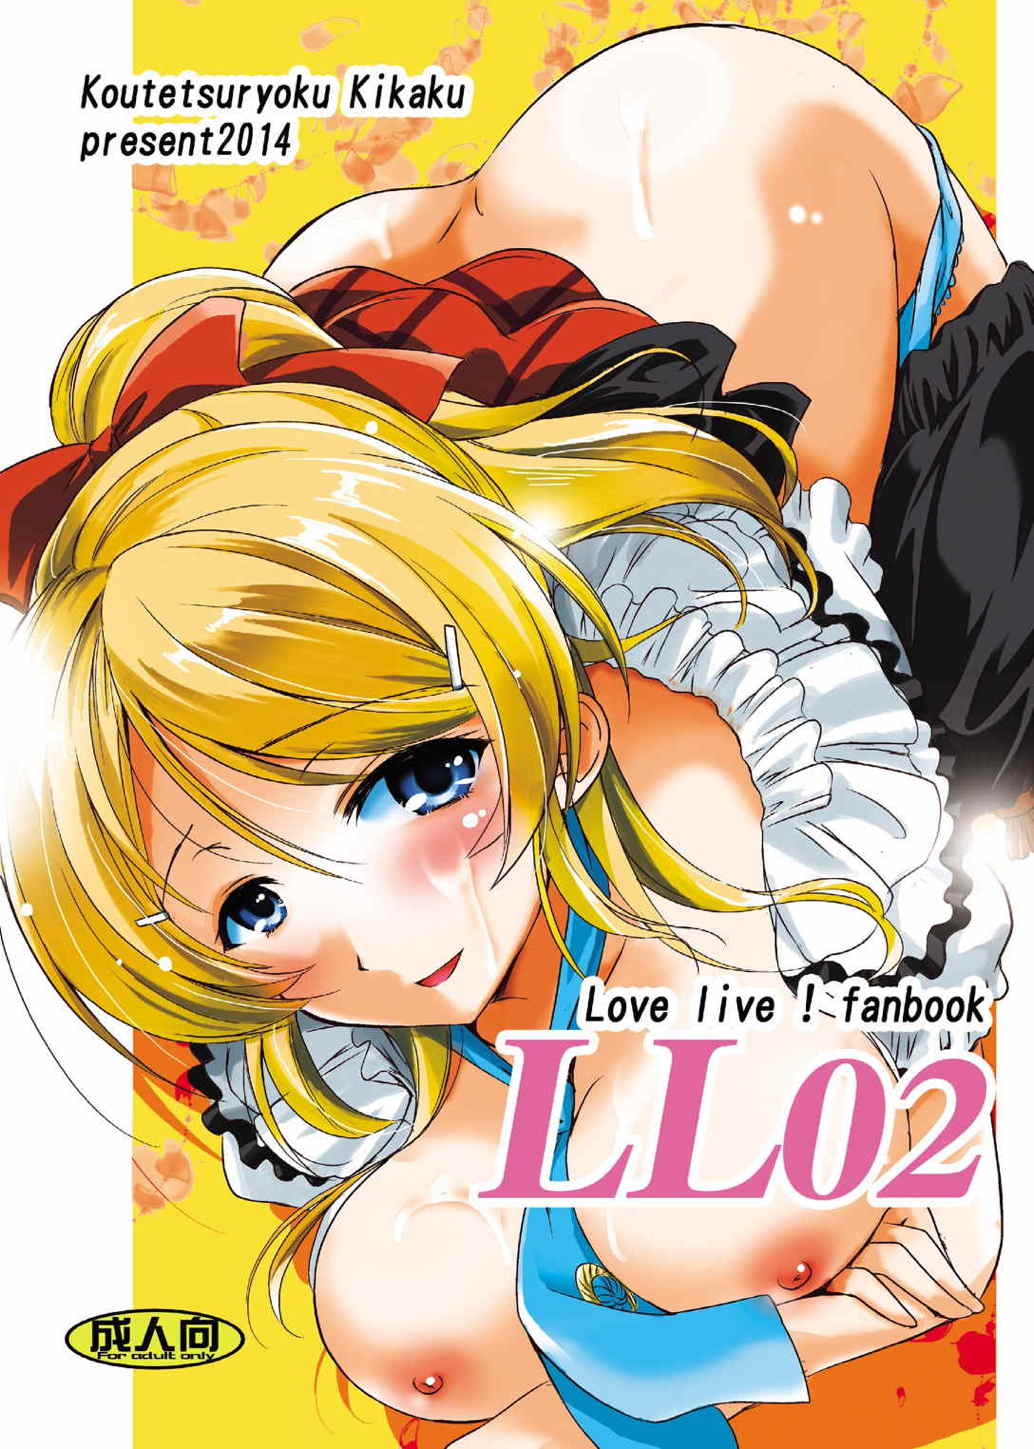 (COMIC1☆8) [Koutetsuryoku Kikaku (Taishinkokuoh Anton)] LL02 (Love Live!) page 1 full